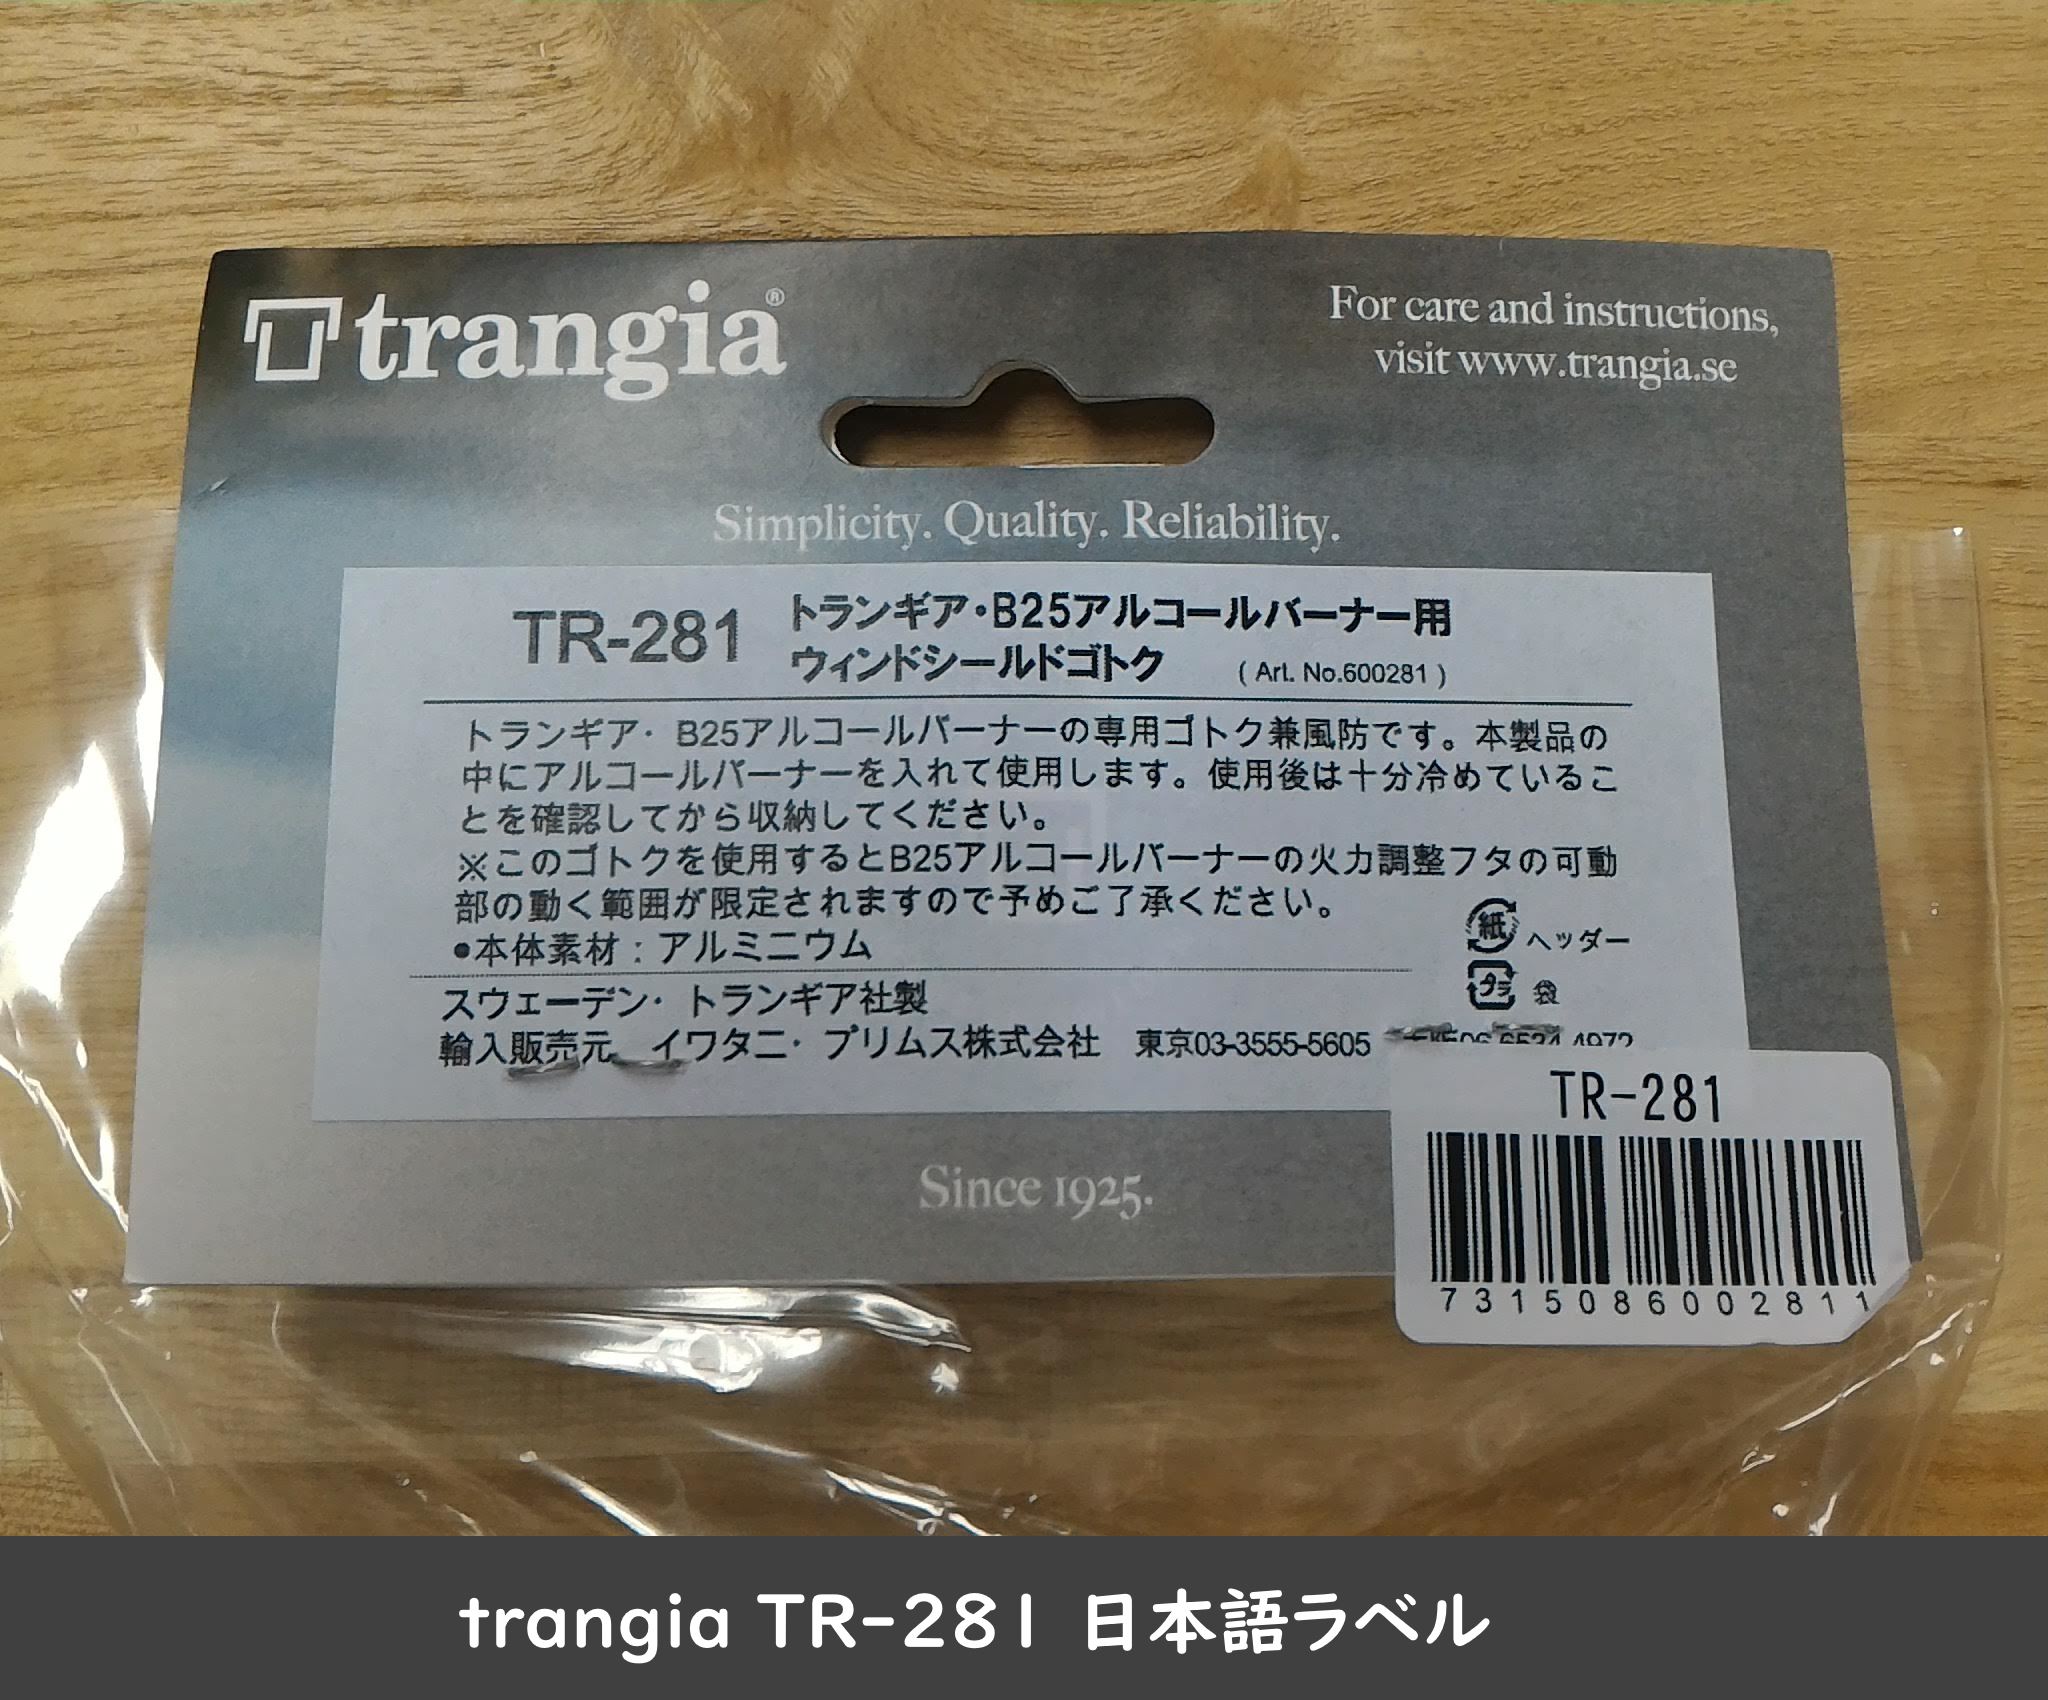 trangia TR-281 日本語ラベル